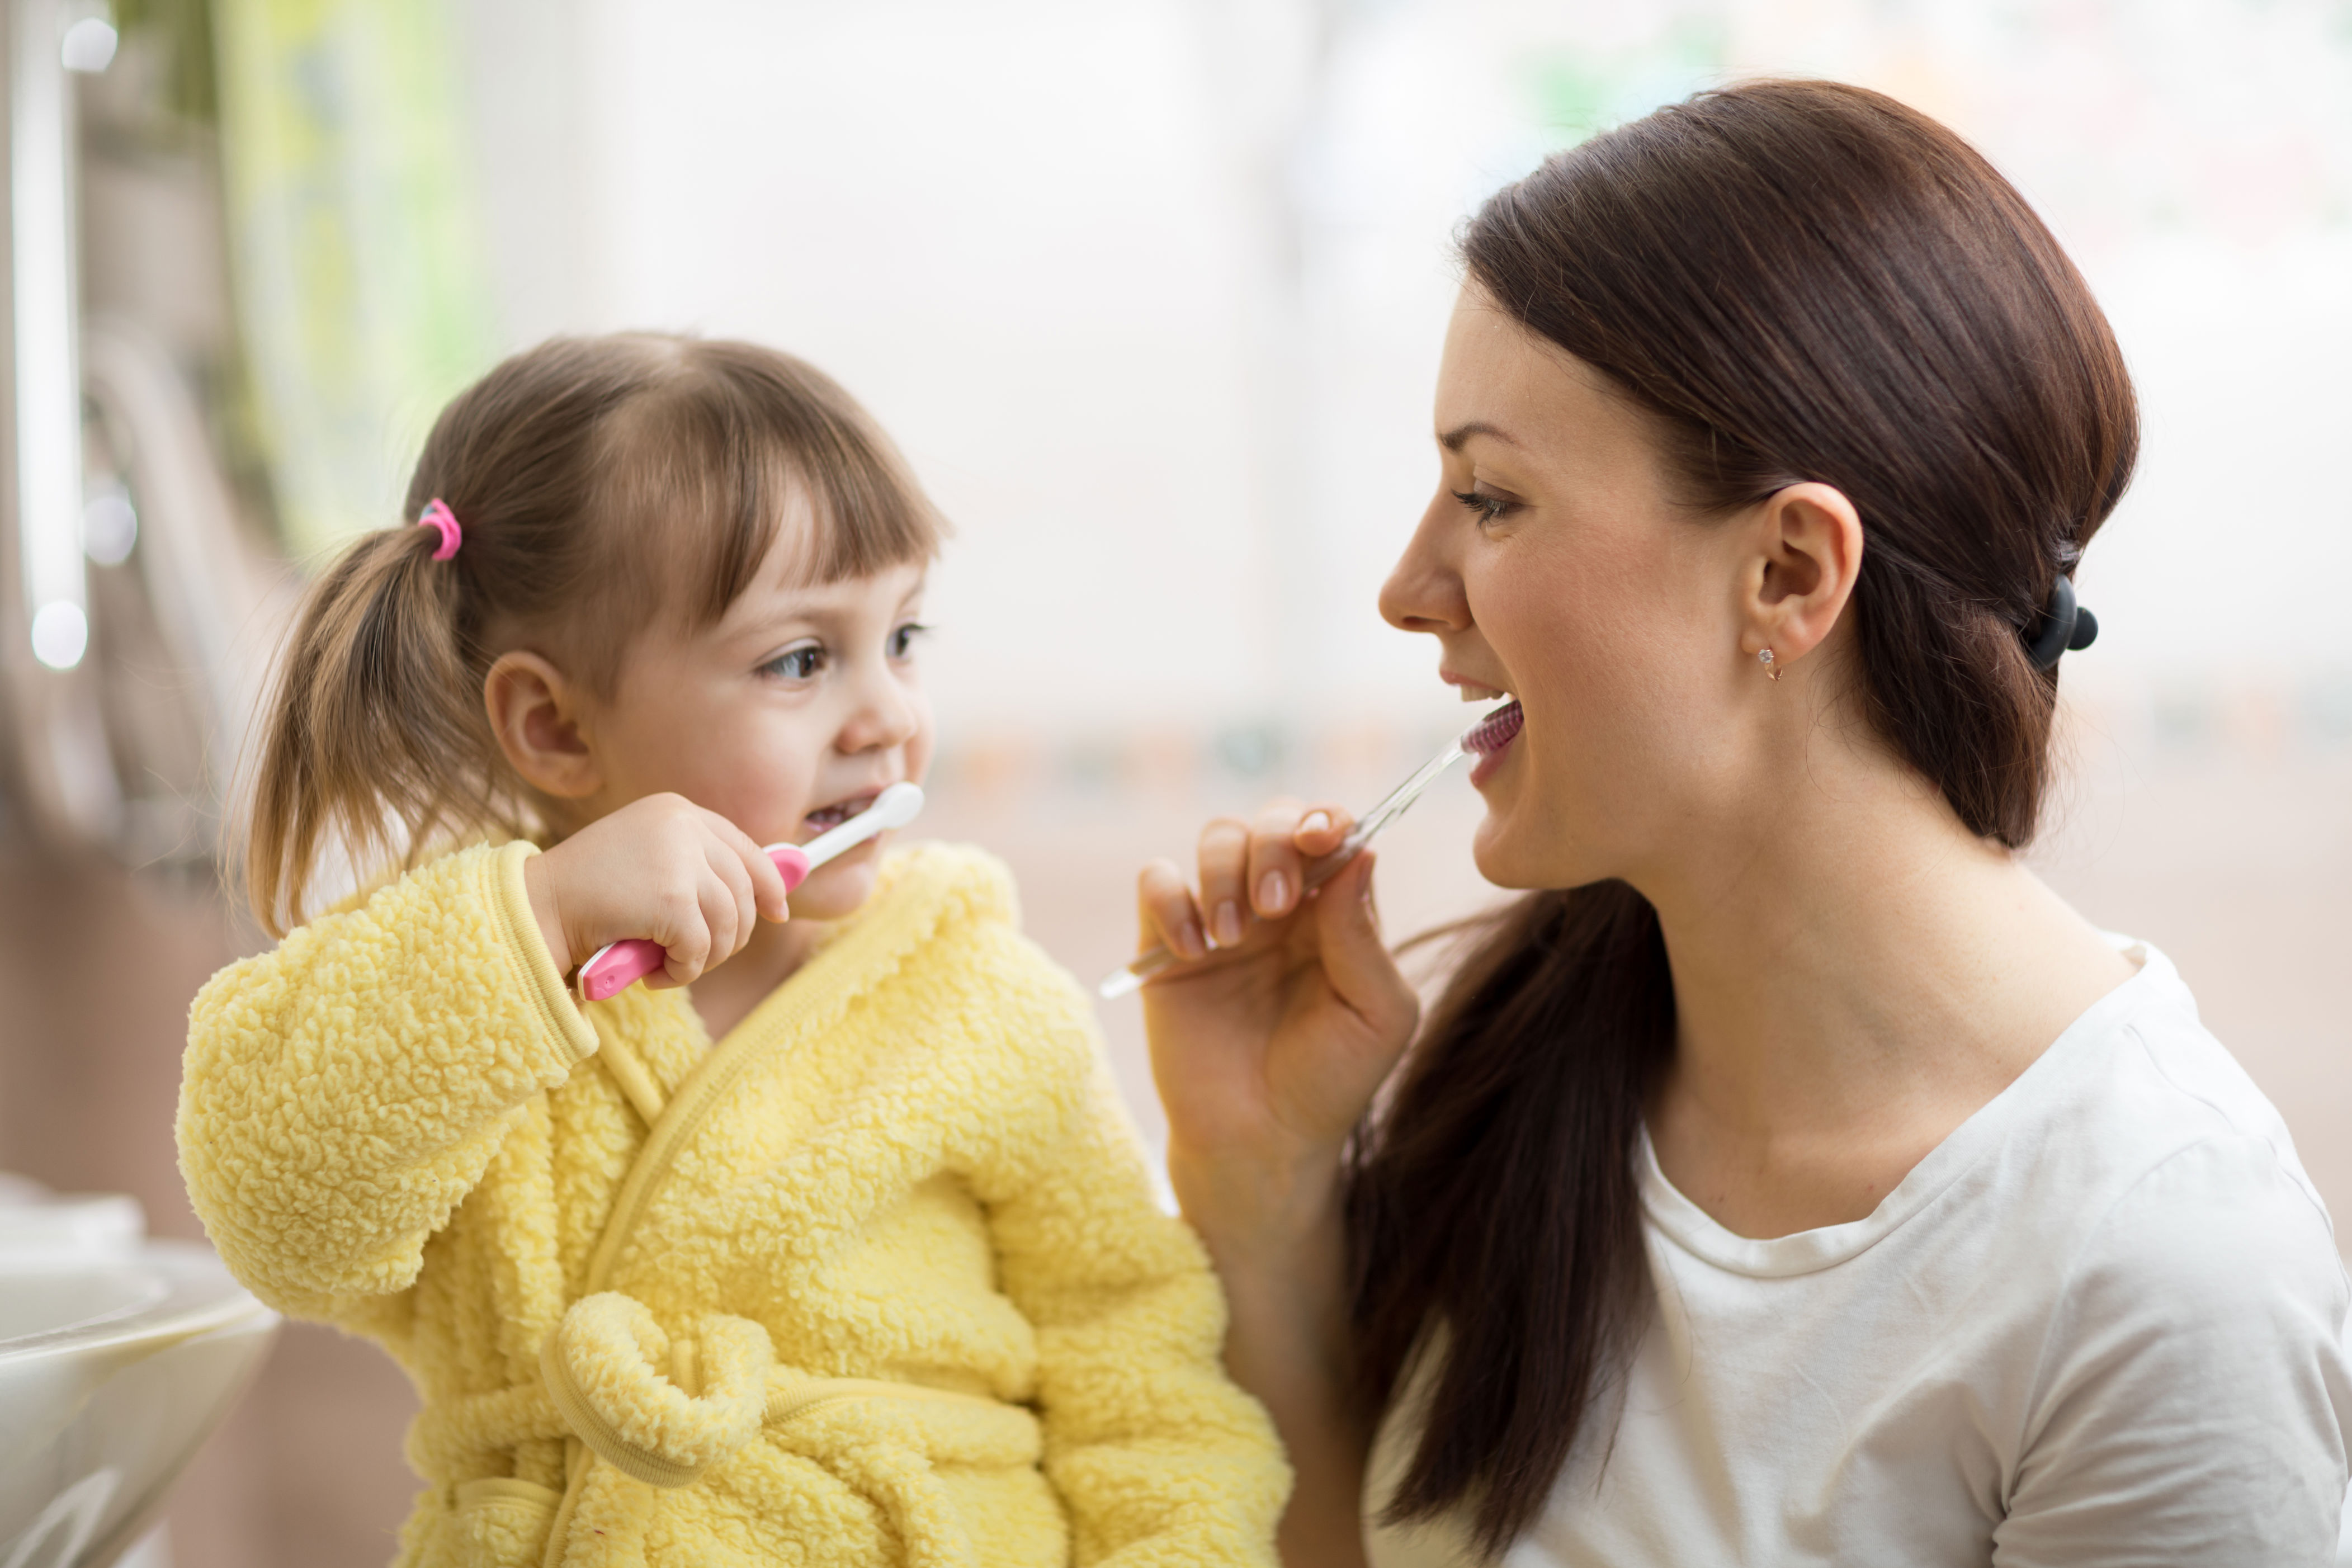 tata stomatolog wyjaśnia, jaka jest najlepsza szczoteczka i pasta dla dzieci. nie takiej odpowiedzi oczekiwali rodzice